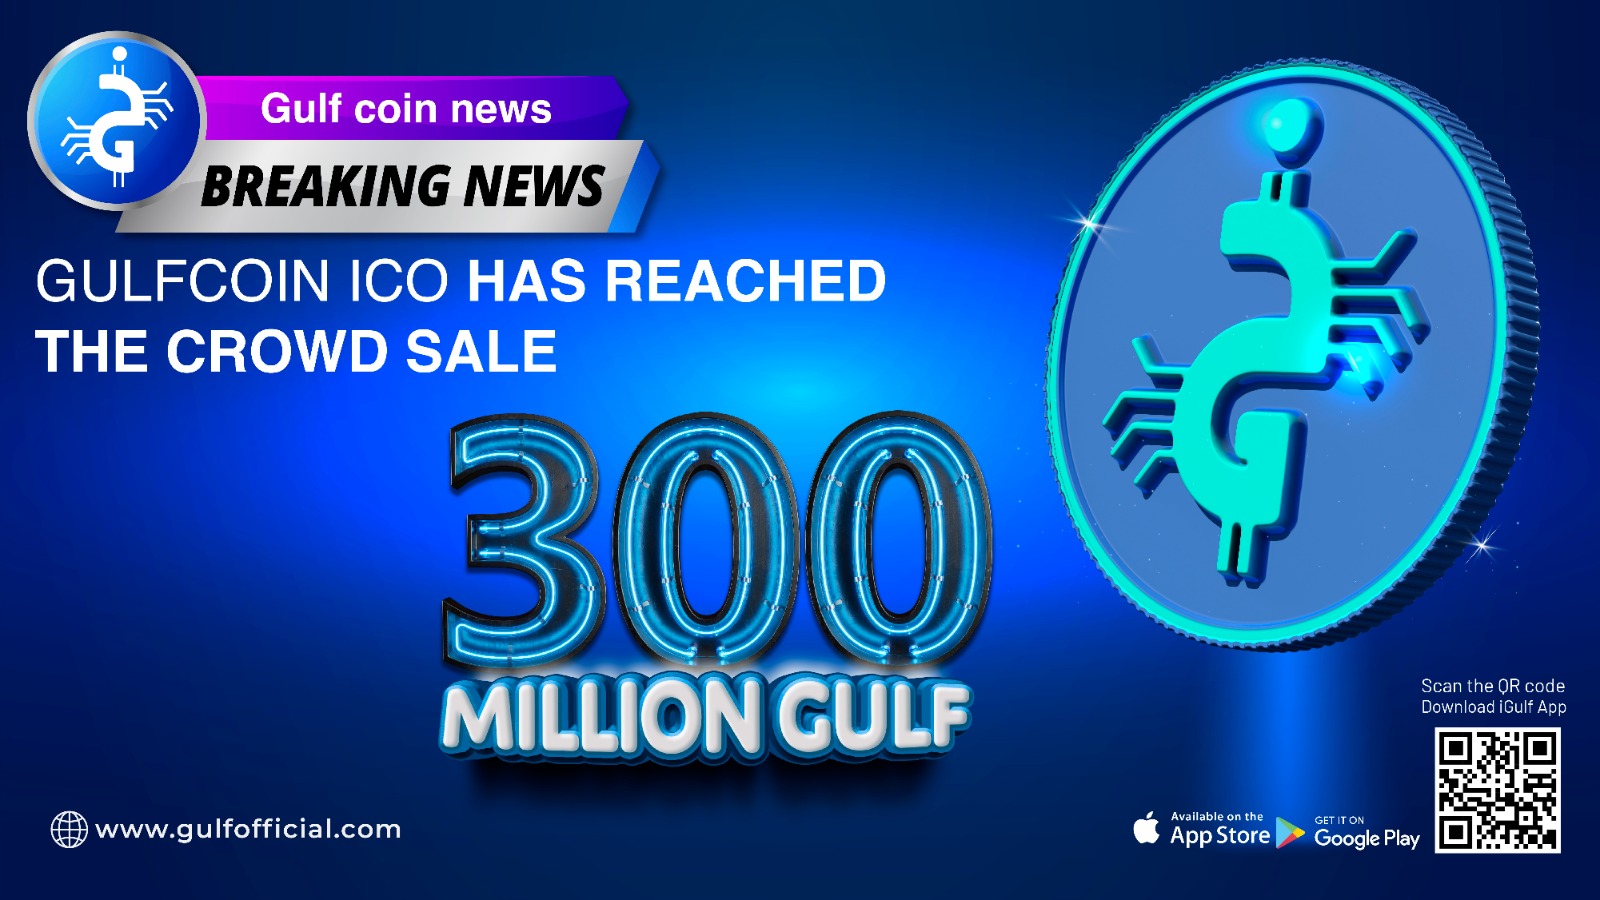 جلف تحقق هدفها الثاني والمبيعات تتخطى ٣٠٠ مليون GULF قبيل أيام من إدراج العملة في المنصات ابتداء من الأسبوع القادم 